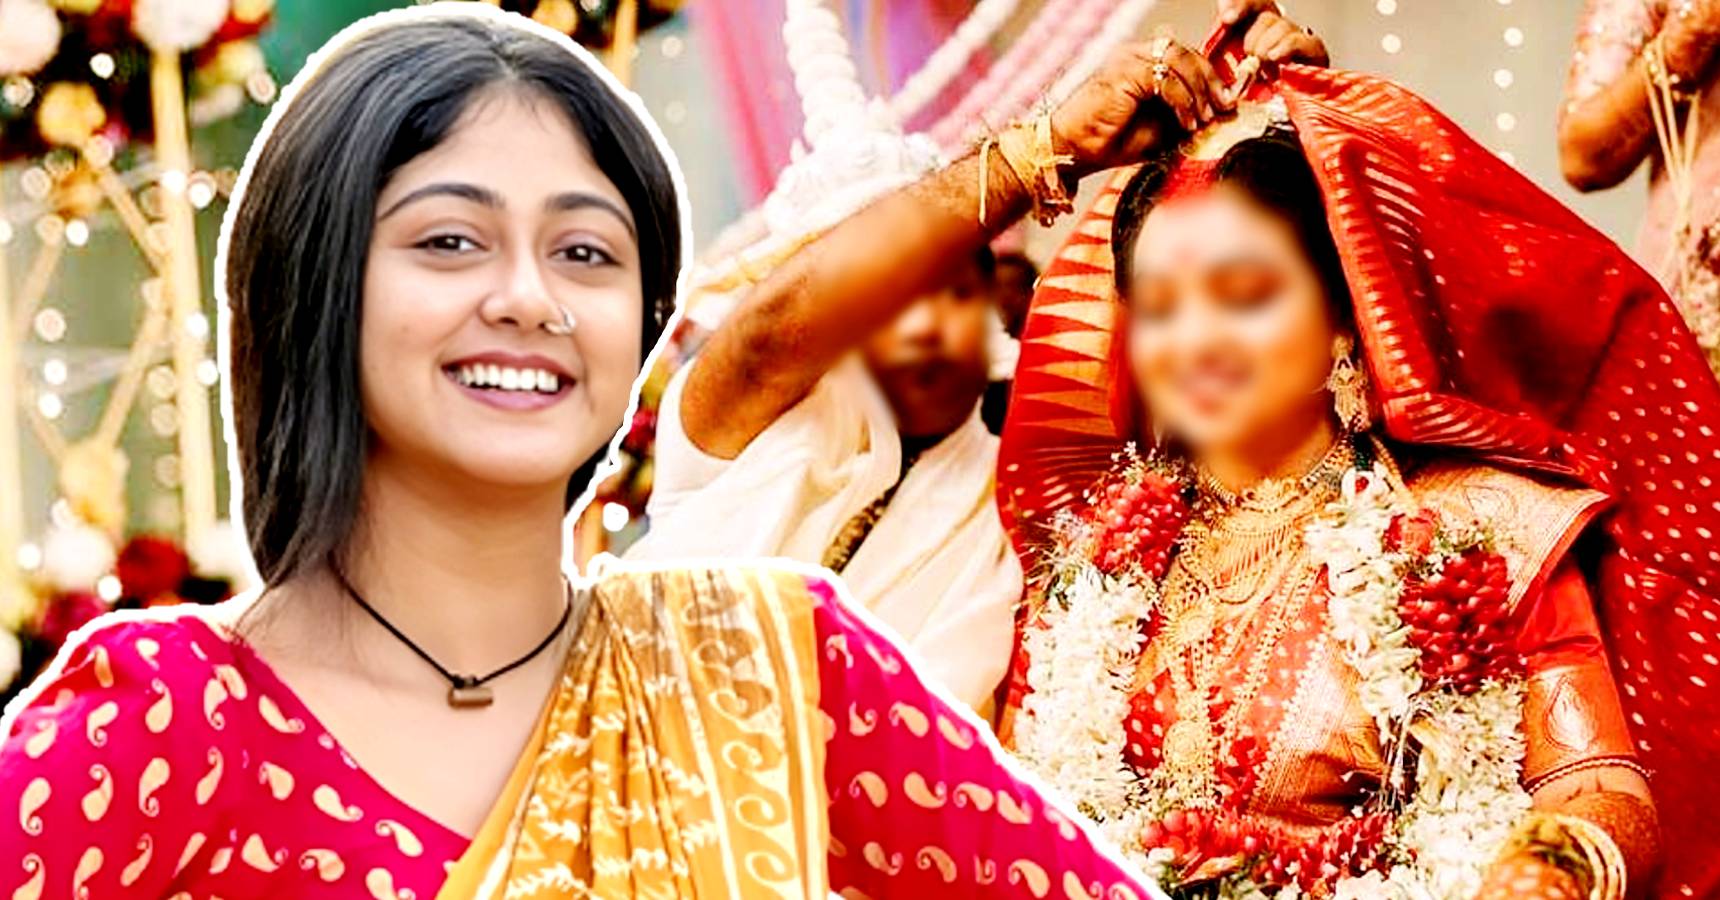 Star Jalsha Bengali serial Panchami actress Susmita Dey new post sparks marriage rumours